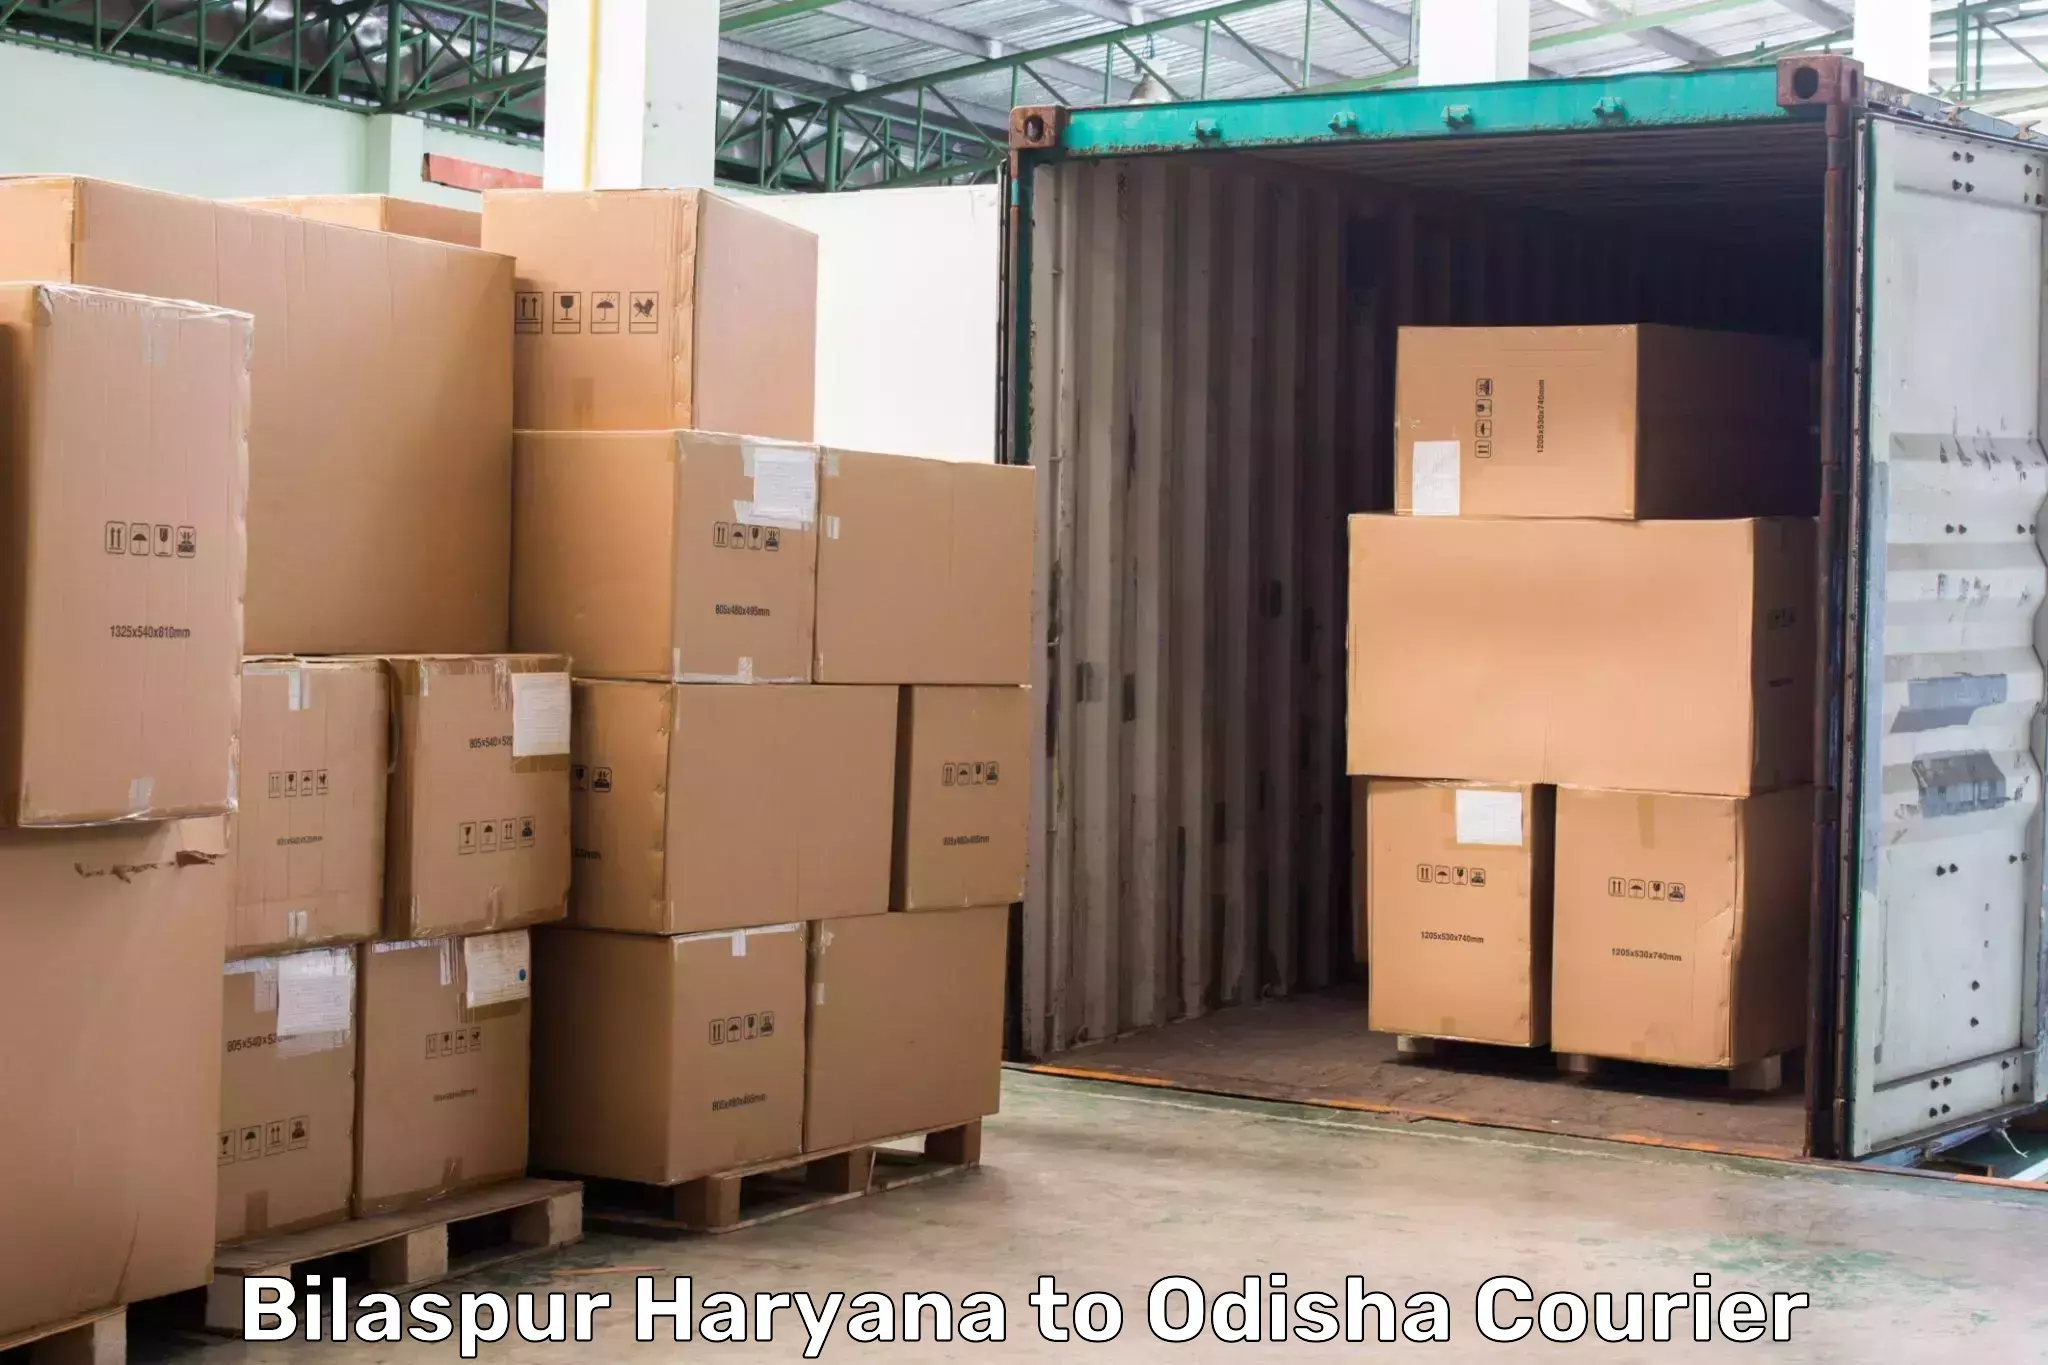 Comprehensive logistics in Bilaspur Haryana to Kupari